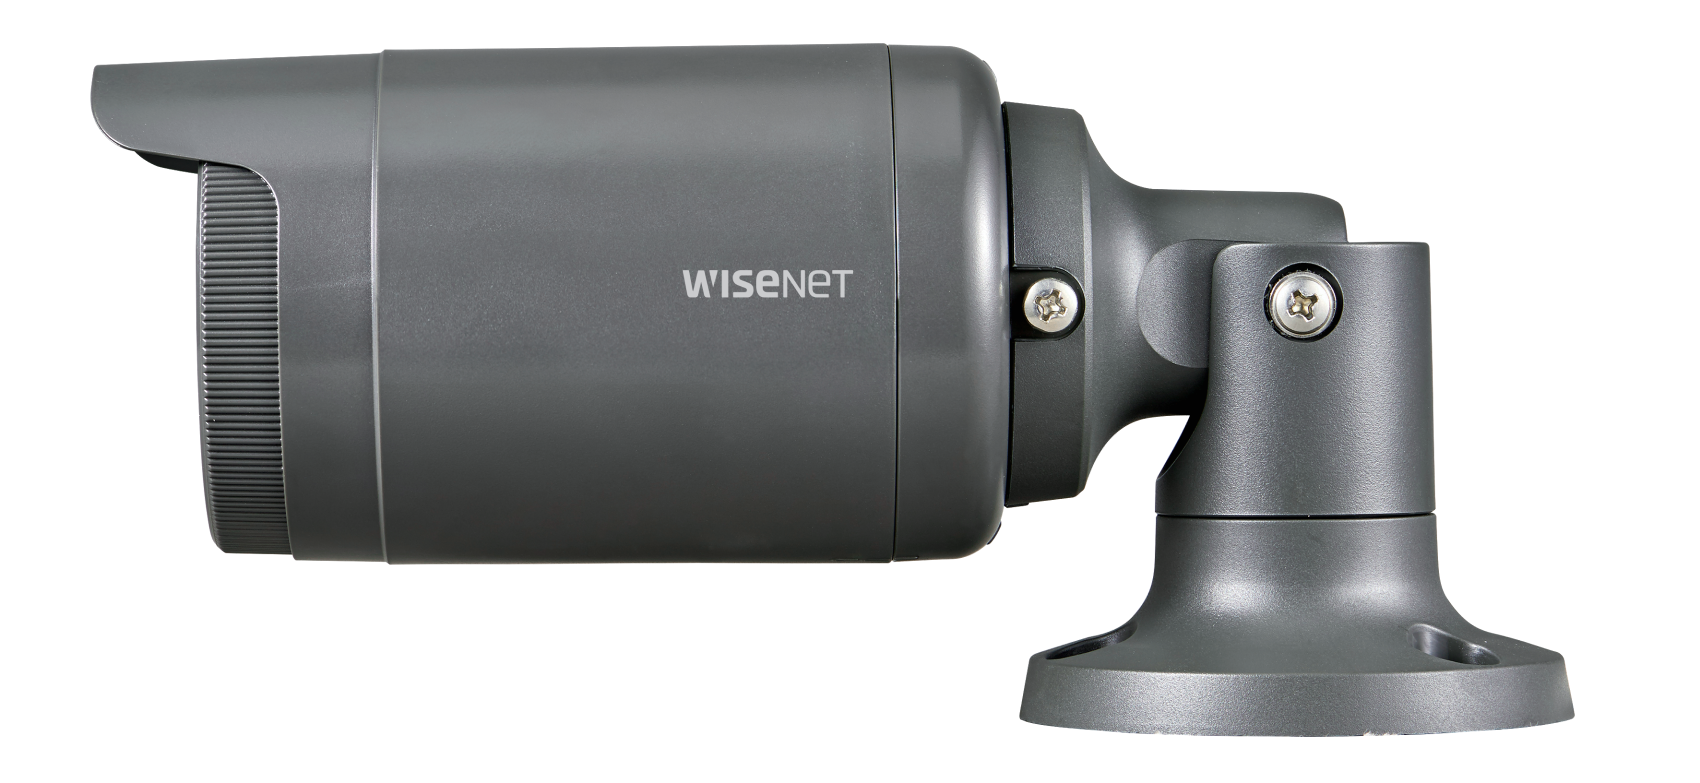 Камера видеонаблюдения Wisenet LNO-6010R отзывы - изображения 5